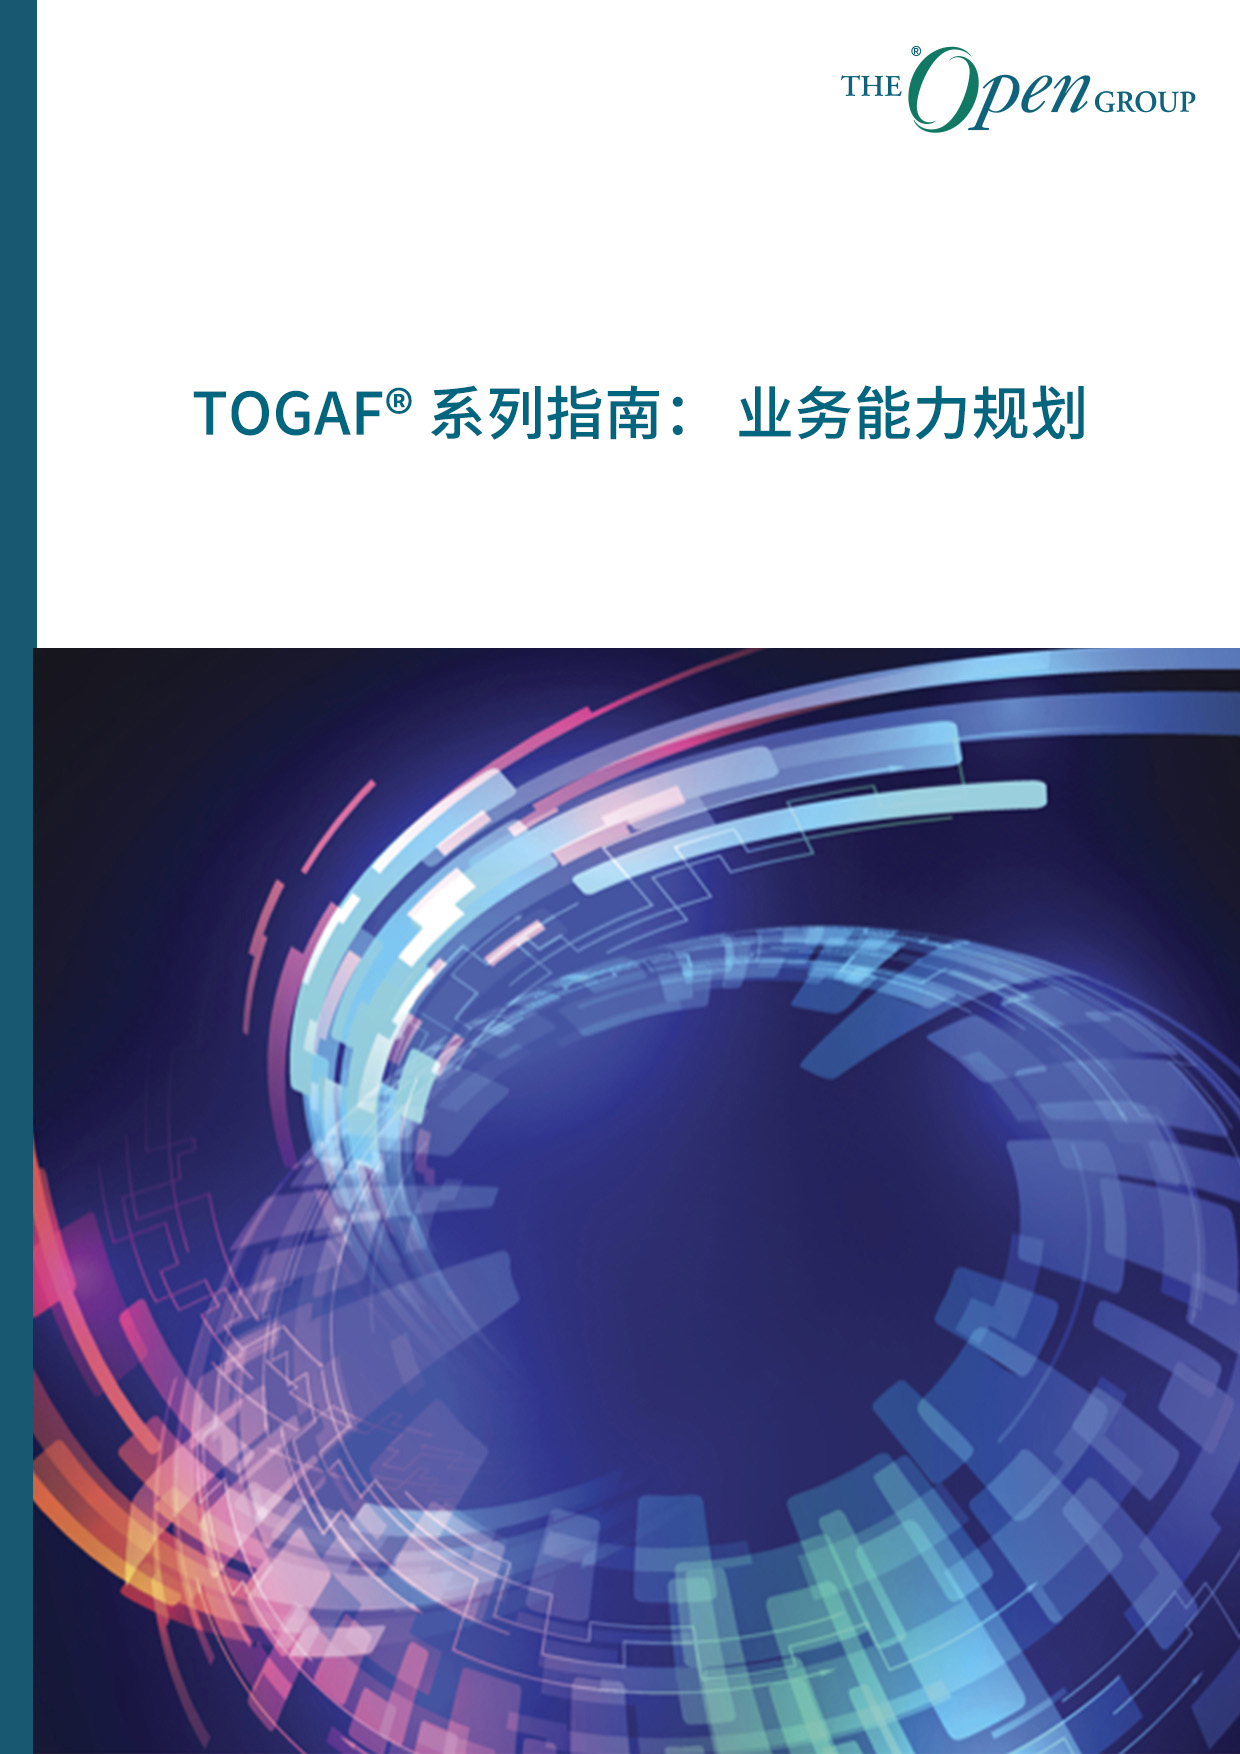 TOGAF® 系列指南： 业务能力规划